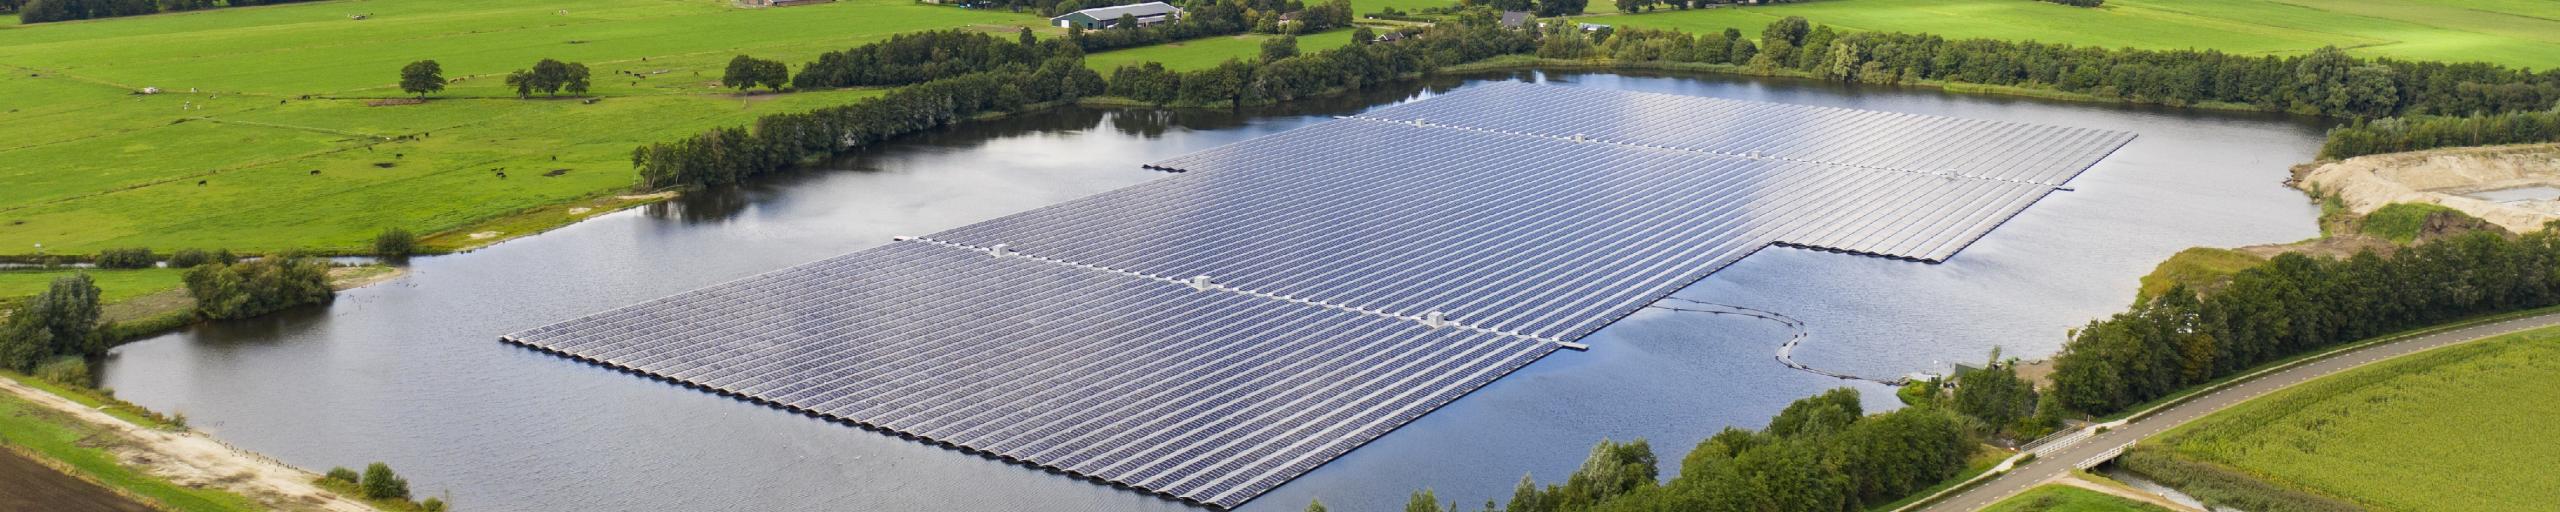 Luchtfoto van het zonnepark in Beilen. Beeld: GroenLeven